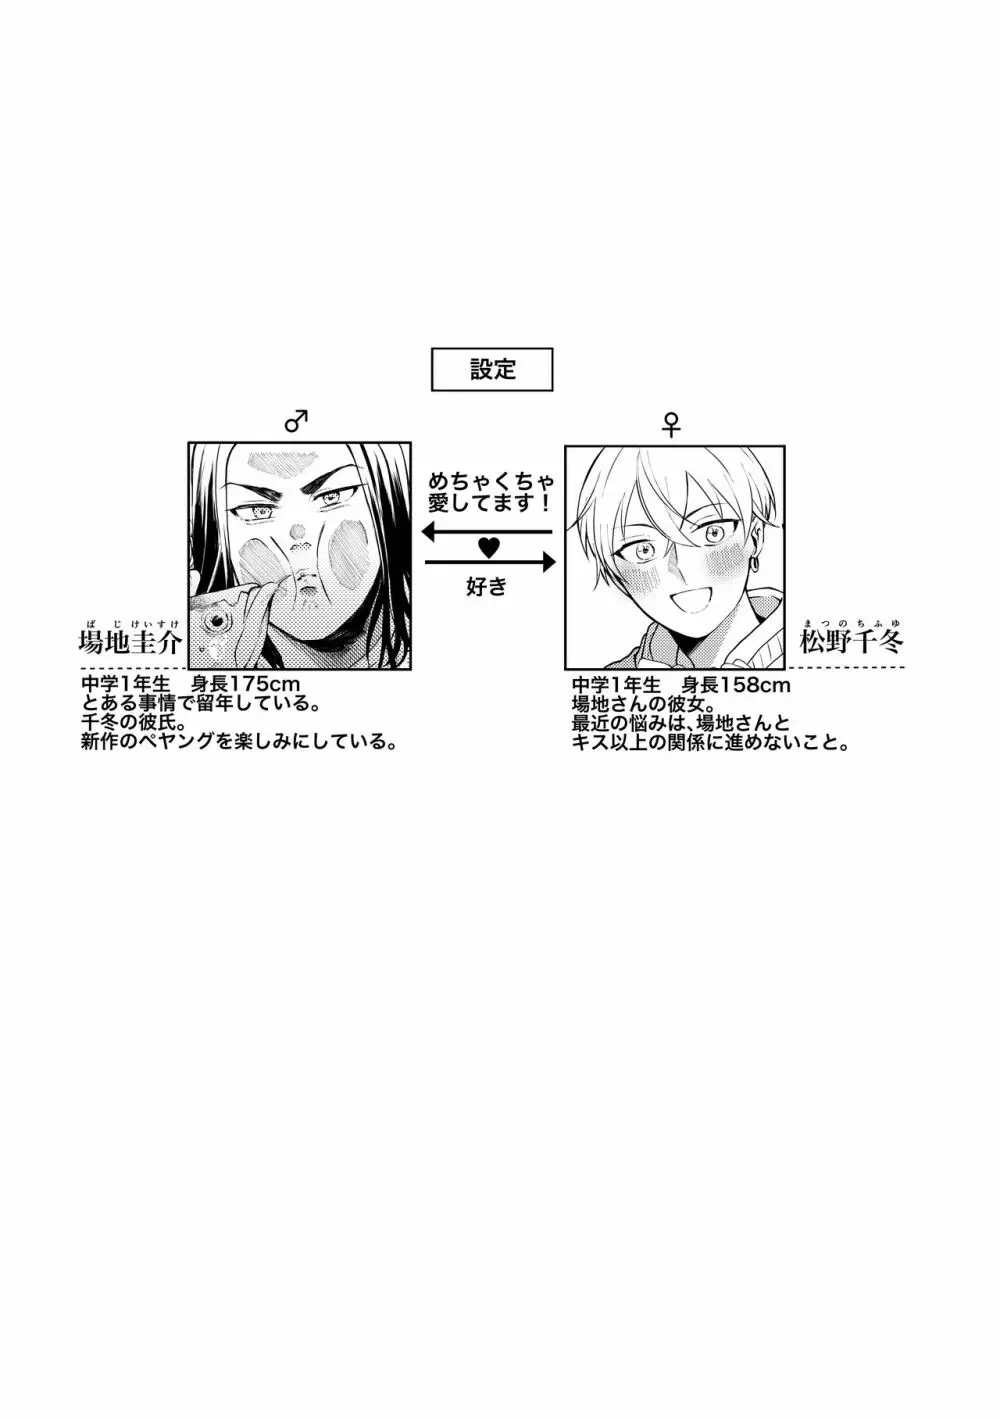 [Shiropome (Mersey)] [Dōninshi] 5/ 3 baji Fuyu ♀ shinkan sanpuru ①(Tokyo Revengers)sample Page.2